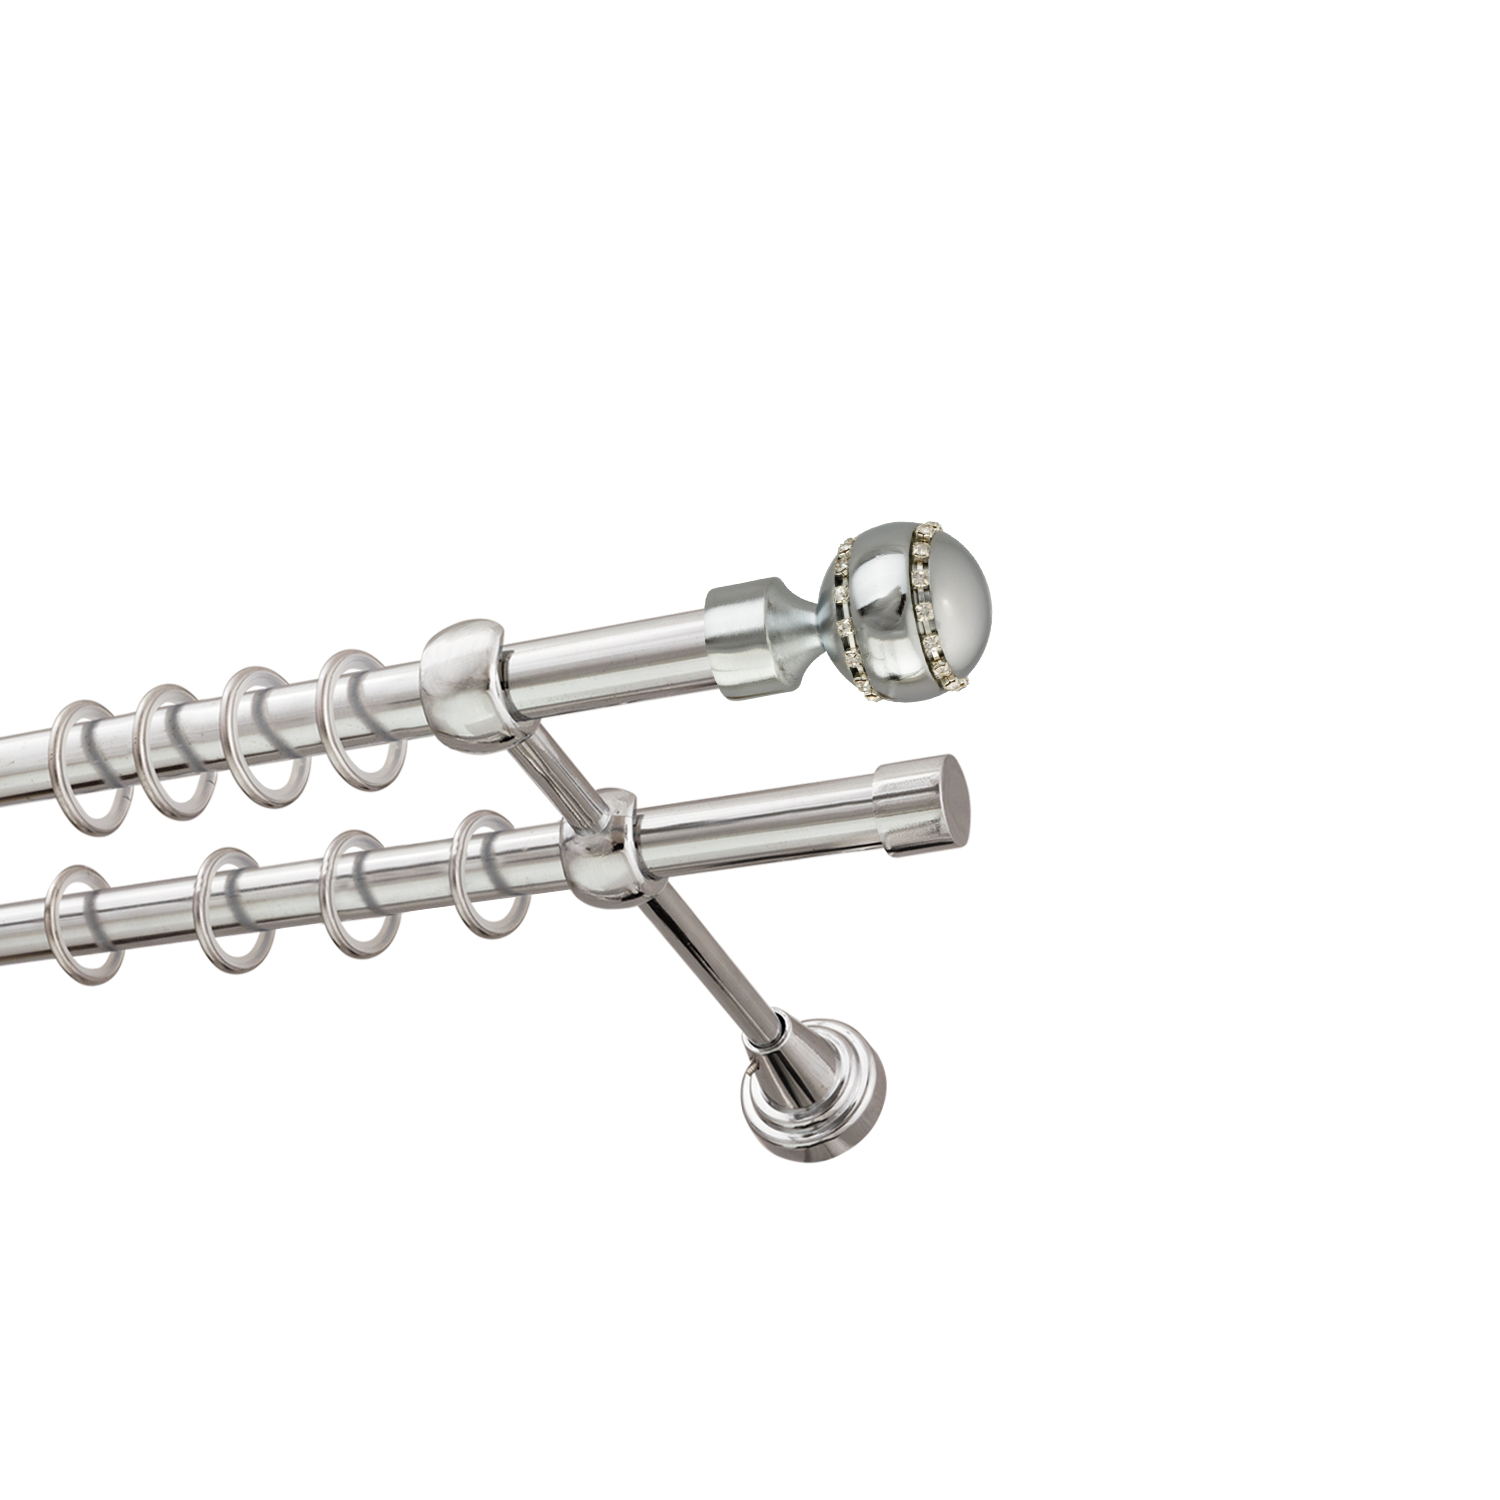 Металлический карниз для штор Модерн, двухрядный 16/16 мм, серебро, гладкая штанга, длина 200 см - фото Wikidecor.ru